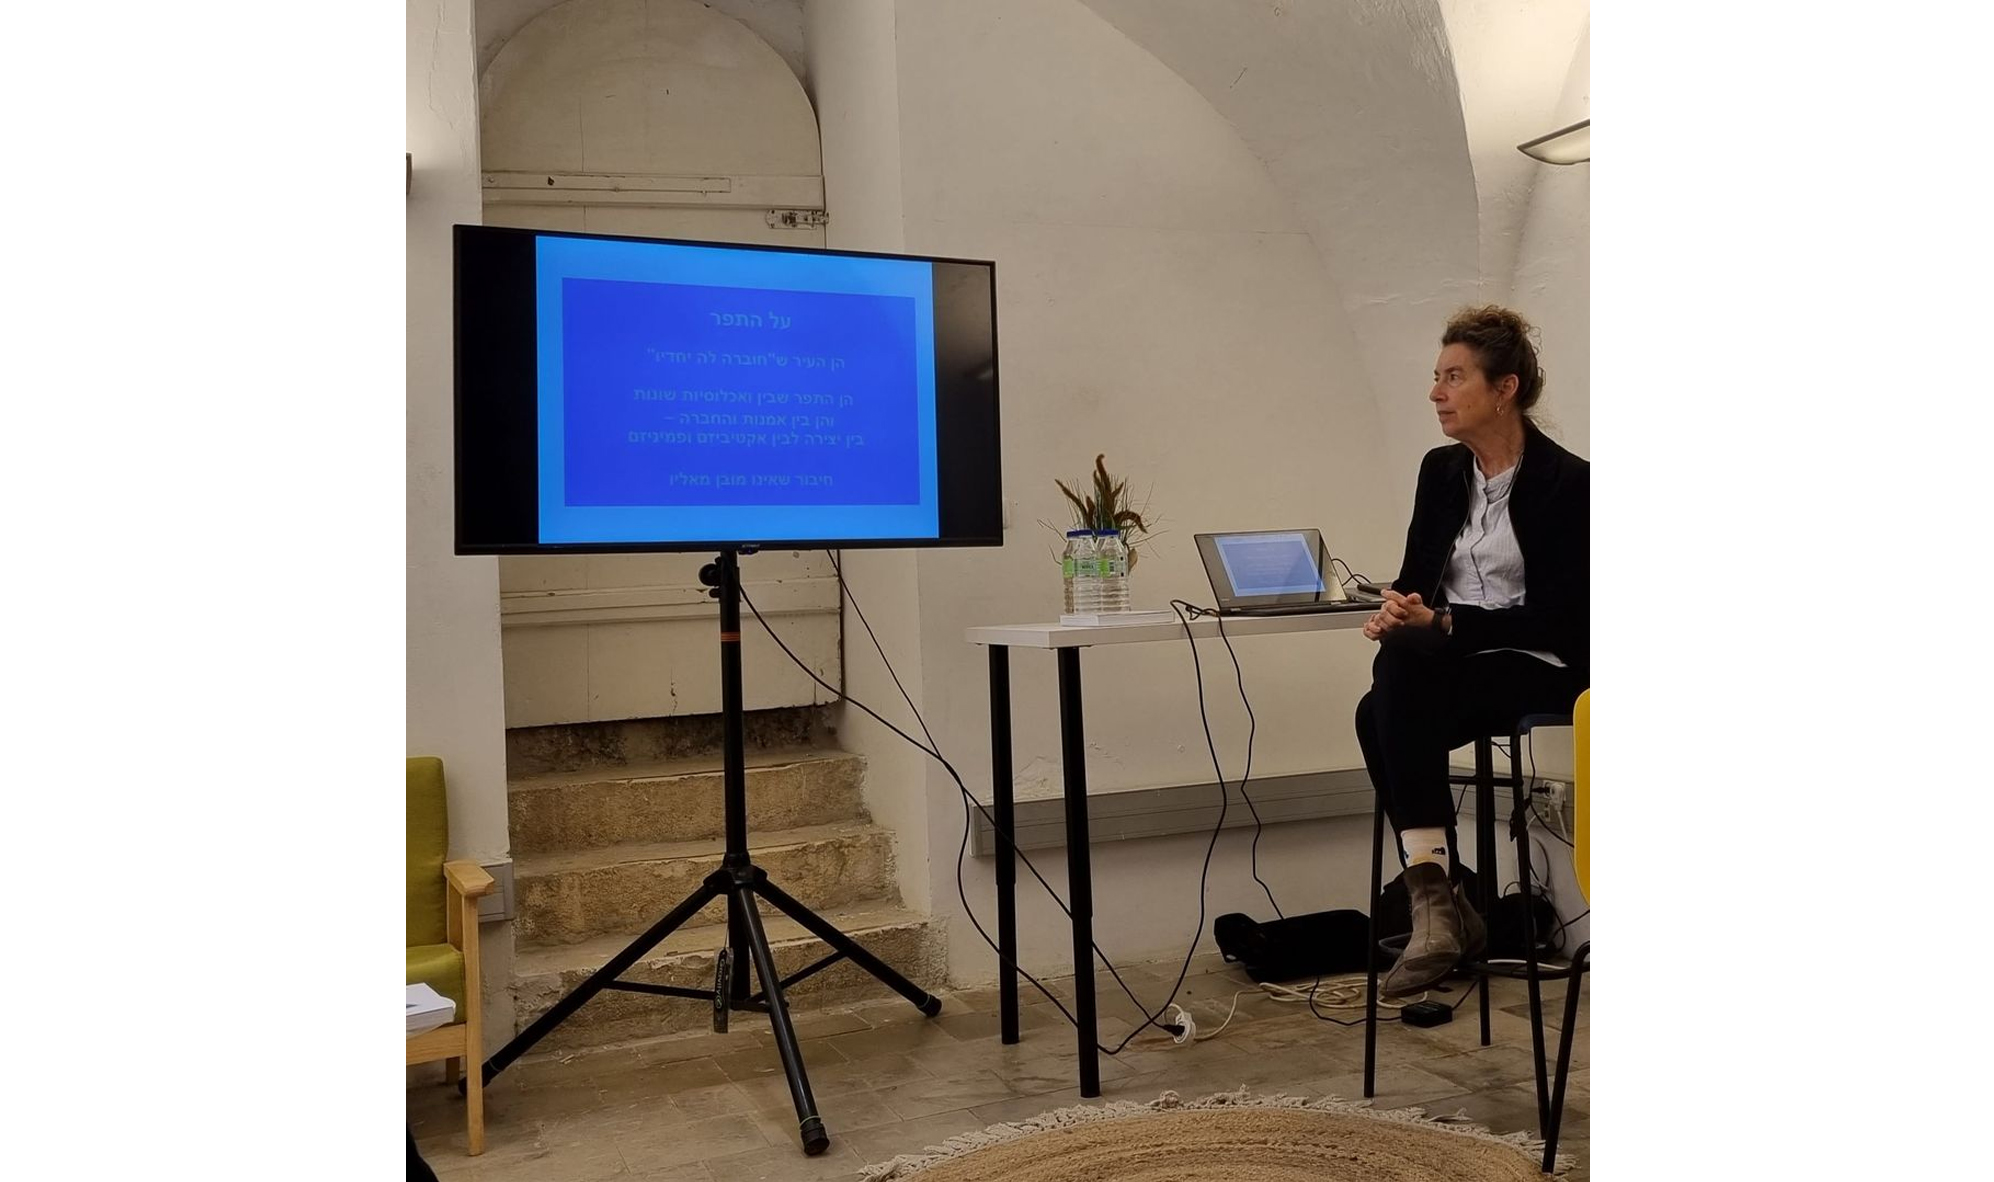 נעמי טנהאוזר בהרצאה ׳על התפר: ארבעה עשורים של פמיניזם ואקטיביזם בסצינת האמנות בירושלים׳ -  במסגרת יריד ״אין פרינט״ לספרי אמנות. צילום: יעל סונינו-לוי